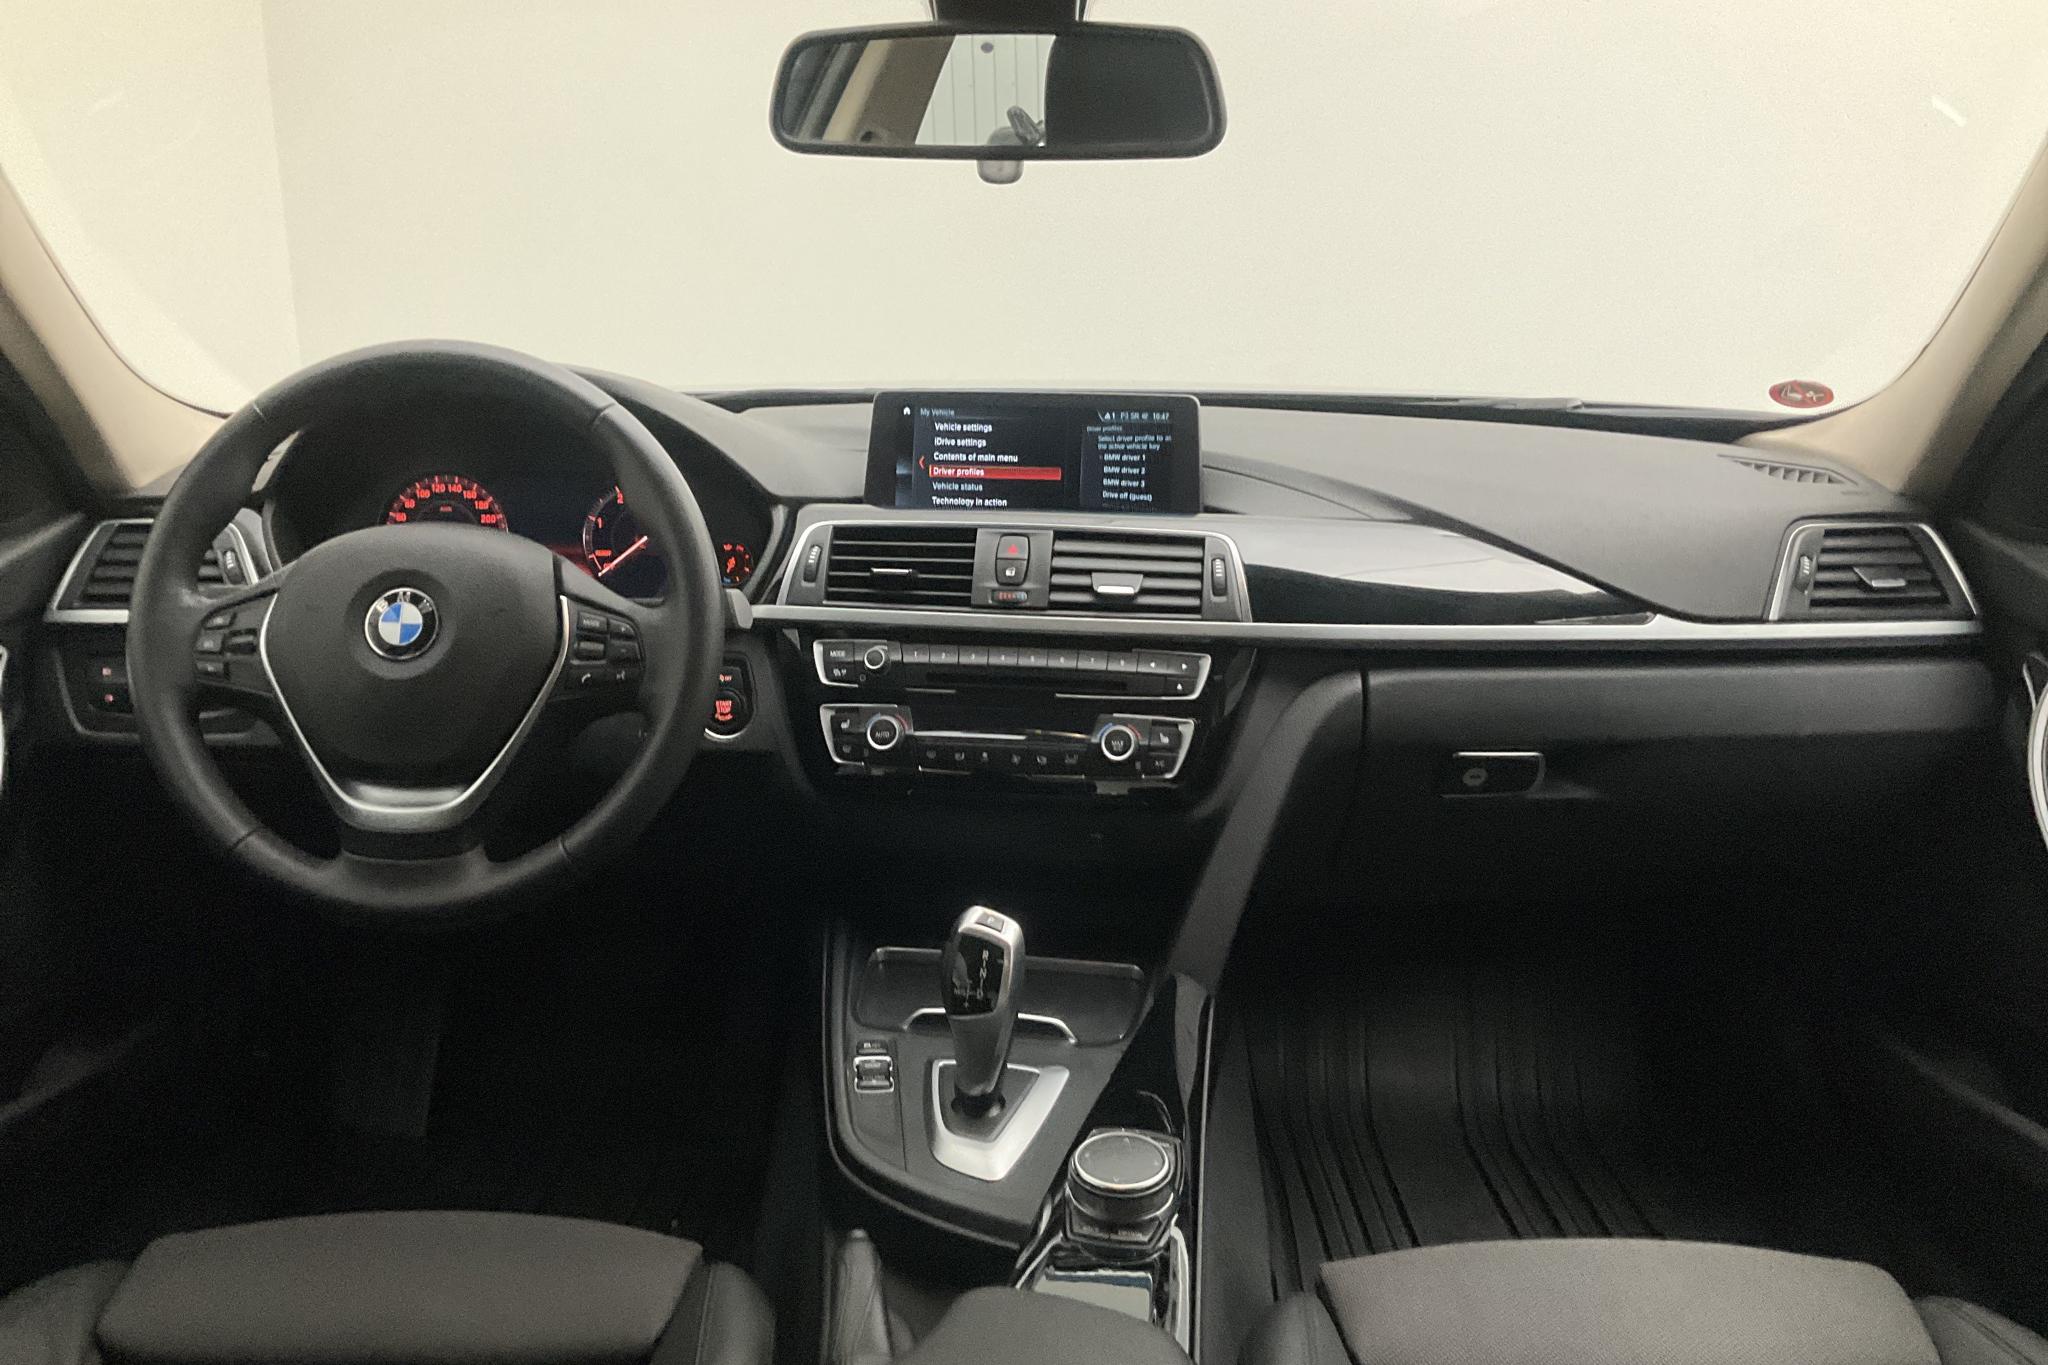 BMW 320d xDrive Sedan, F30 (190hk) - 7 434 mil - Automat - svart - 2018